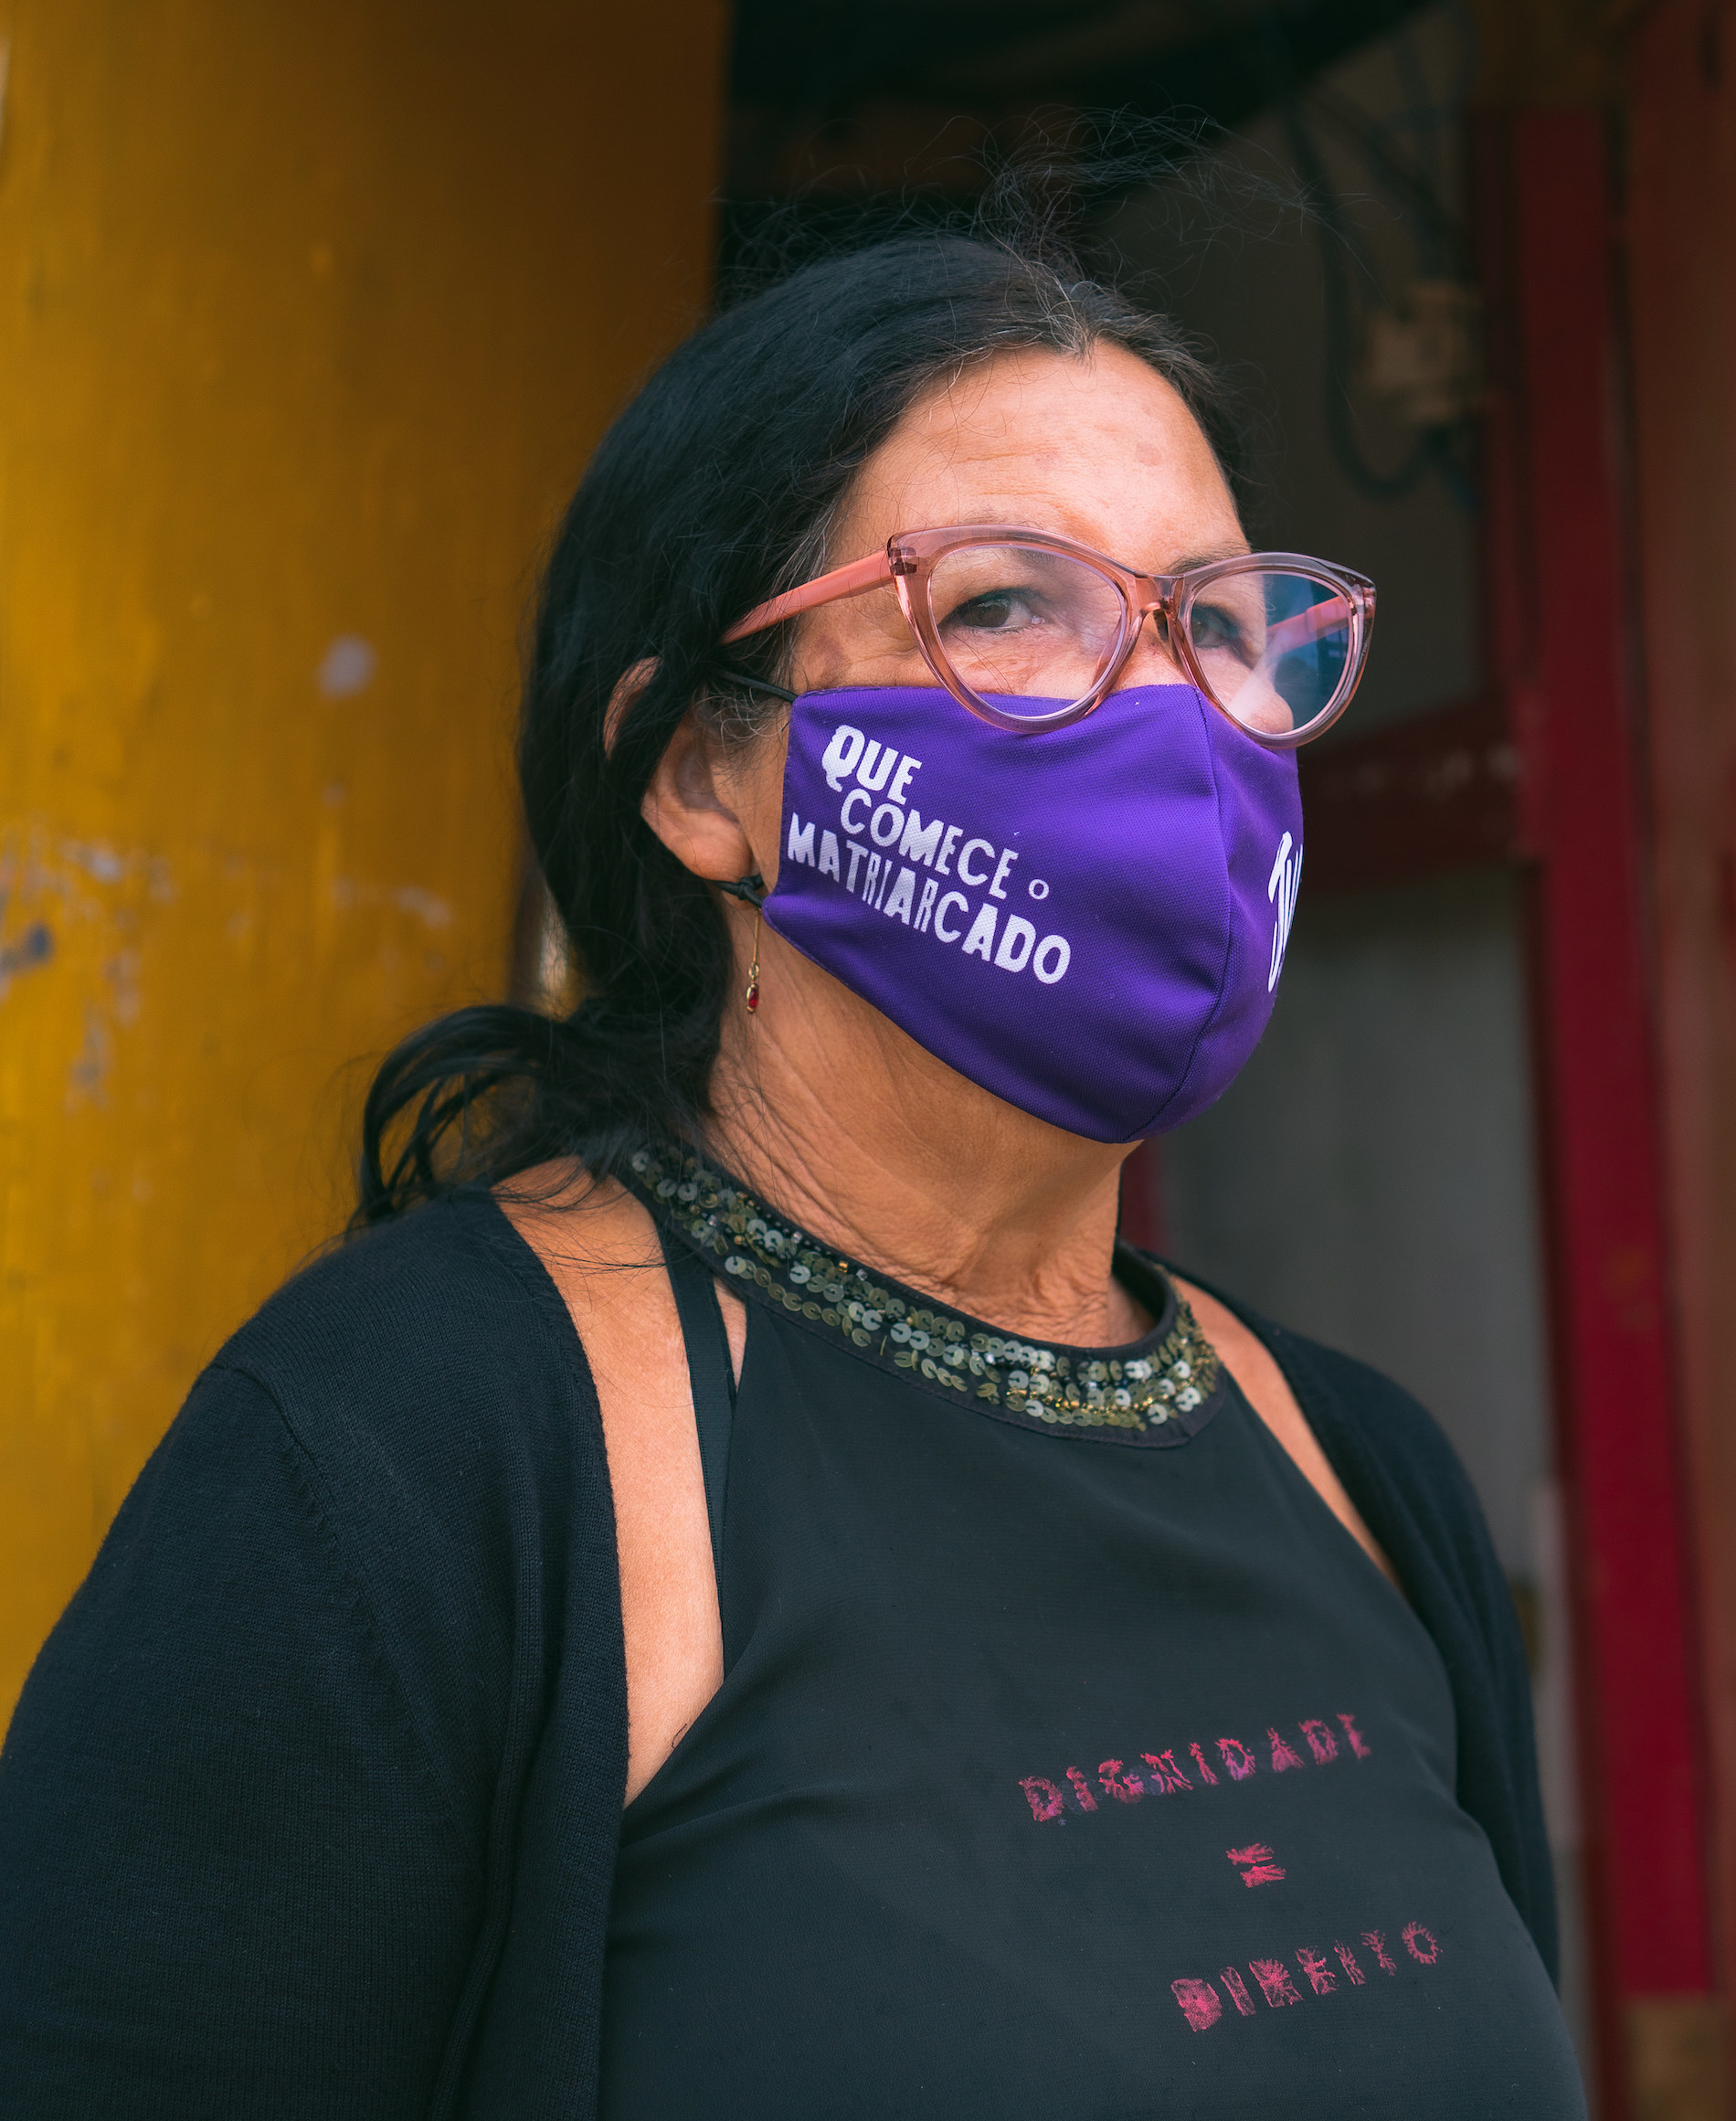 Dona Cigana, moradora da ocupação, vestindo uma camiseta preta onde se lê Dignidade = Direito e uma máscara rosa escrito Que Comece o Matriarcado.